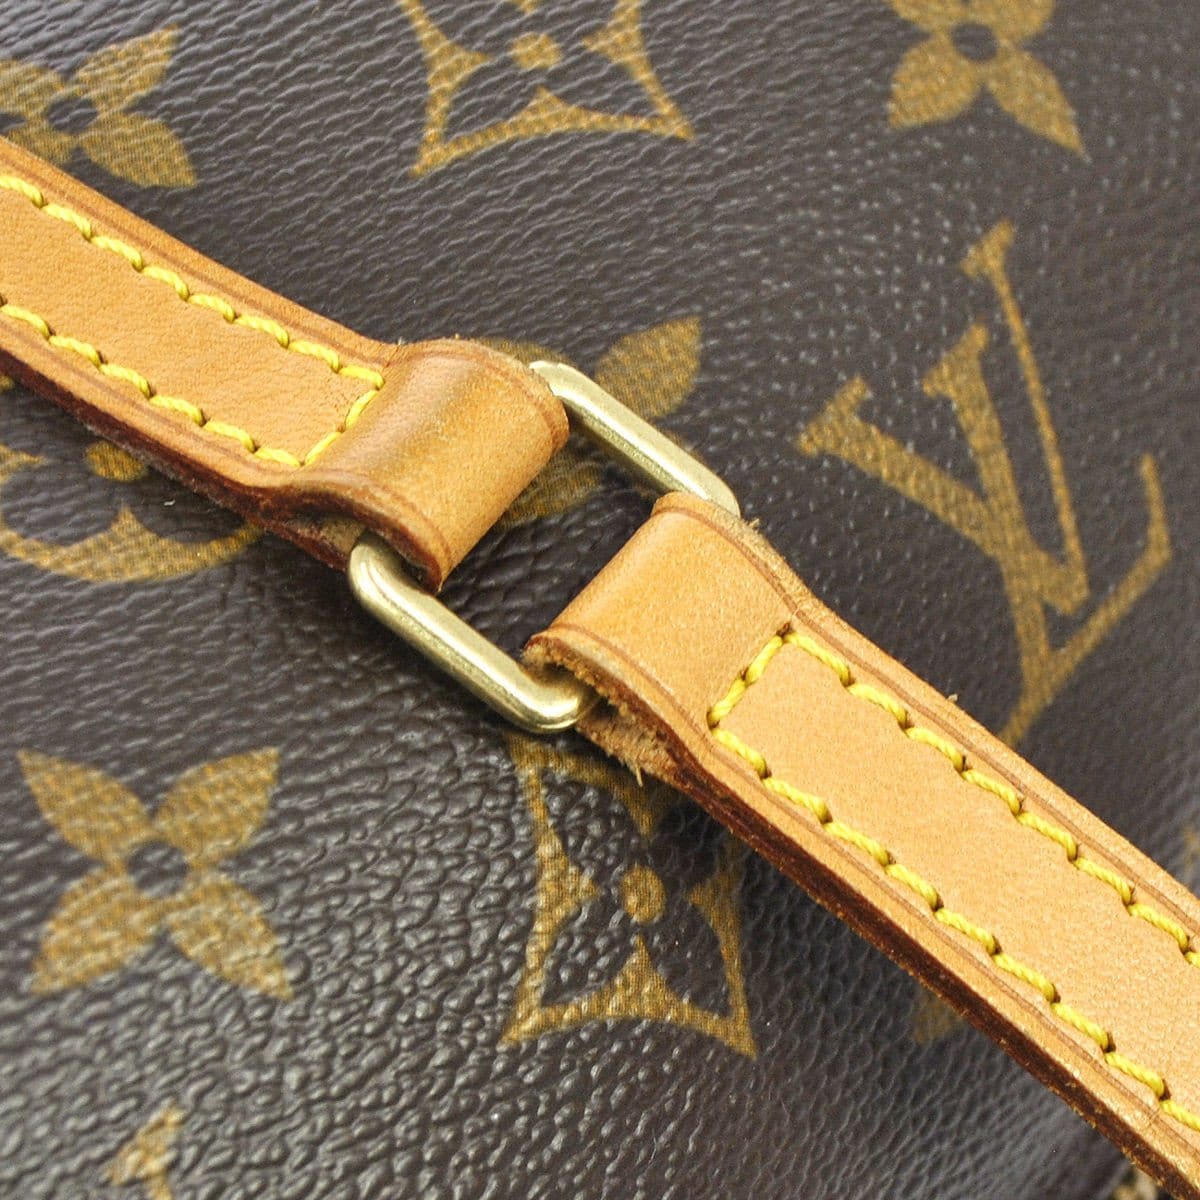 Brown Louis Vuitton Damier Ebene Papillon 26 Handbag – Designer